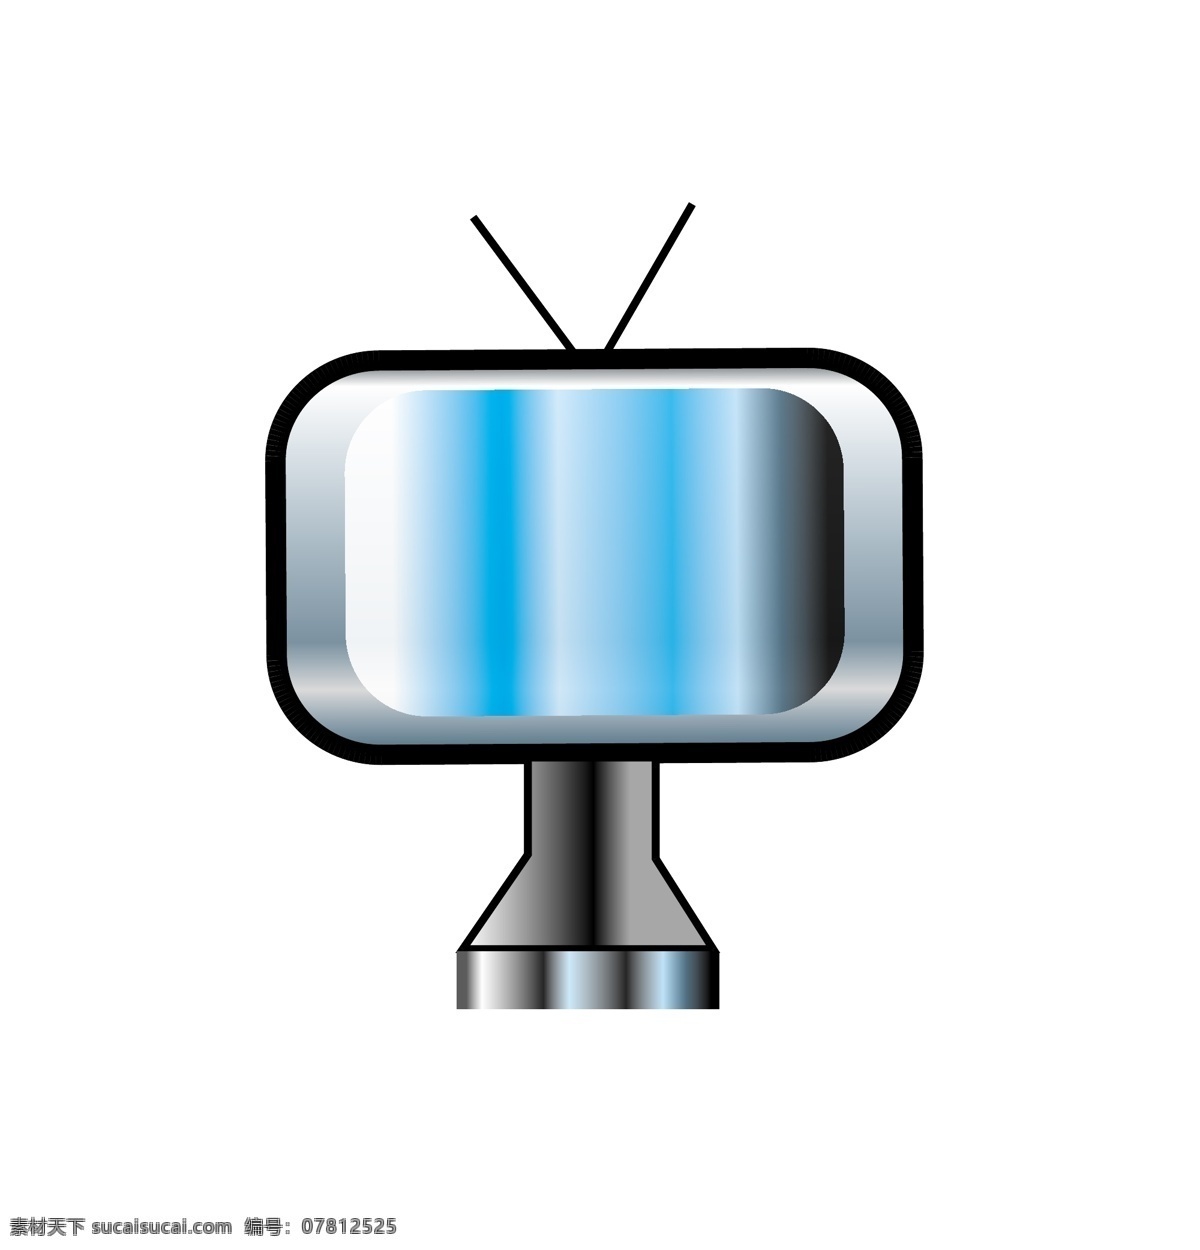 卡通 老式 电视机 插画 卡通电视机 天线电视机 黑白电视机 迷你电视机 蓝色屏幕 台式电视